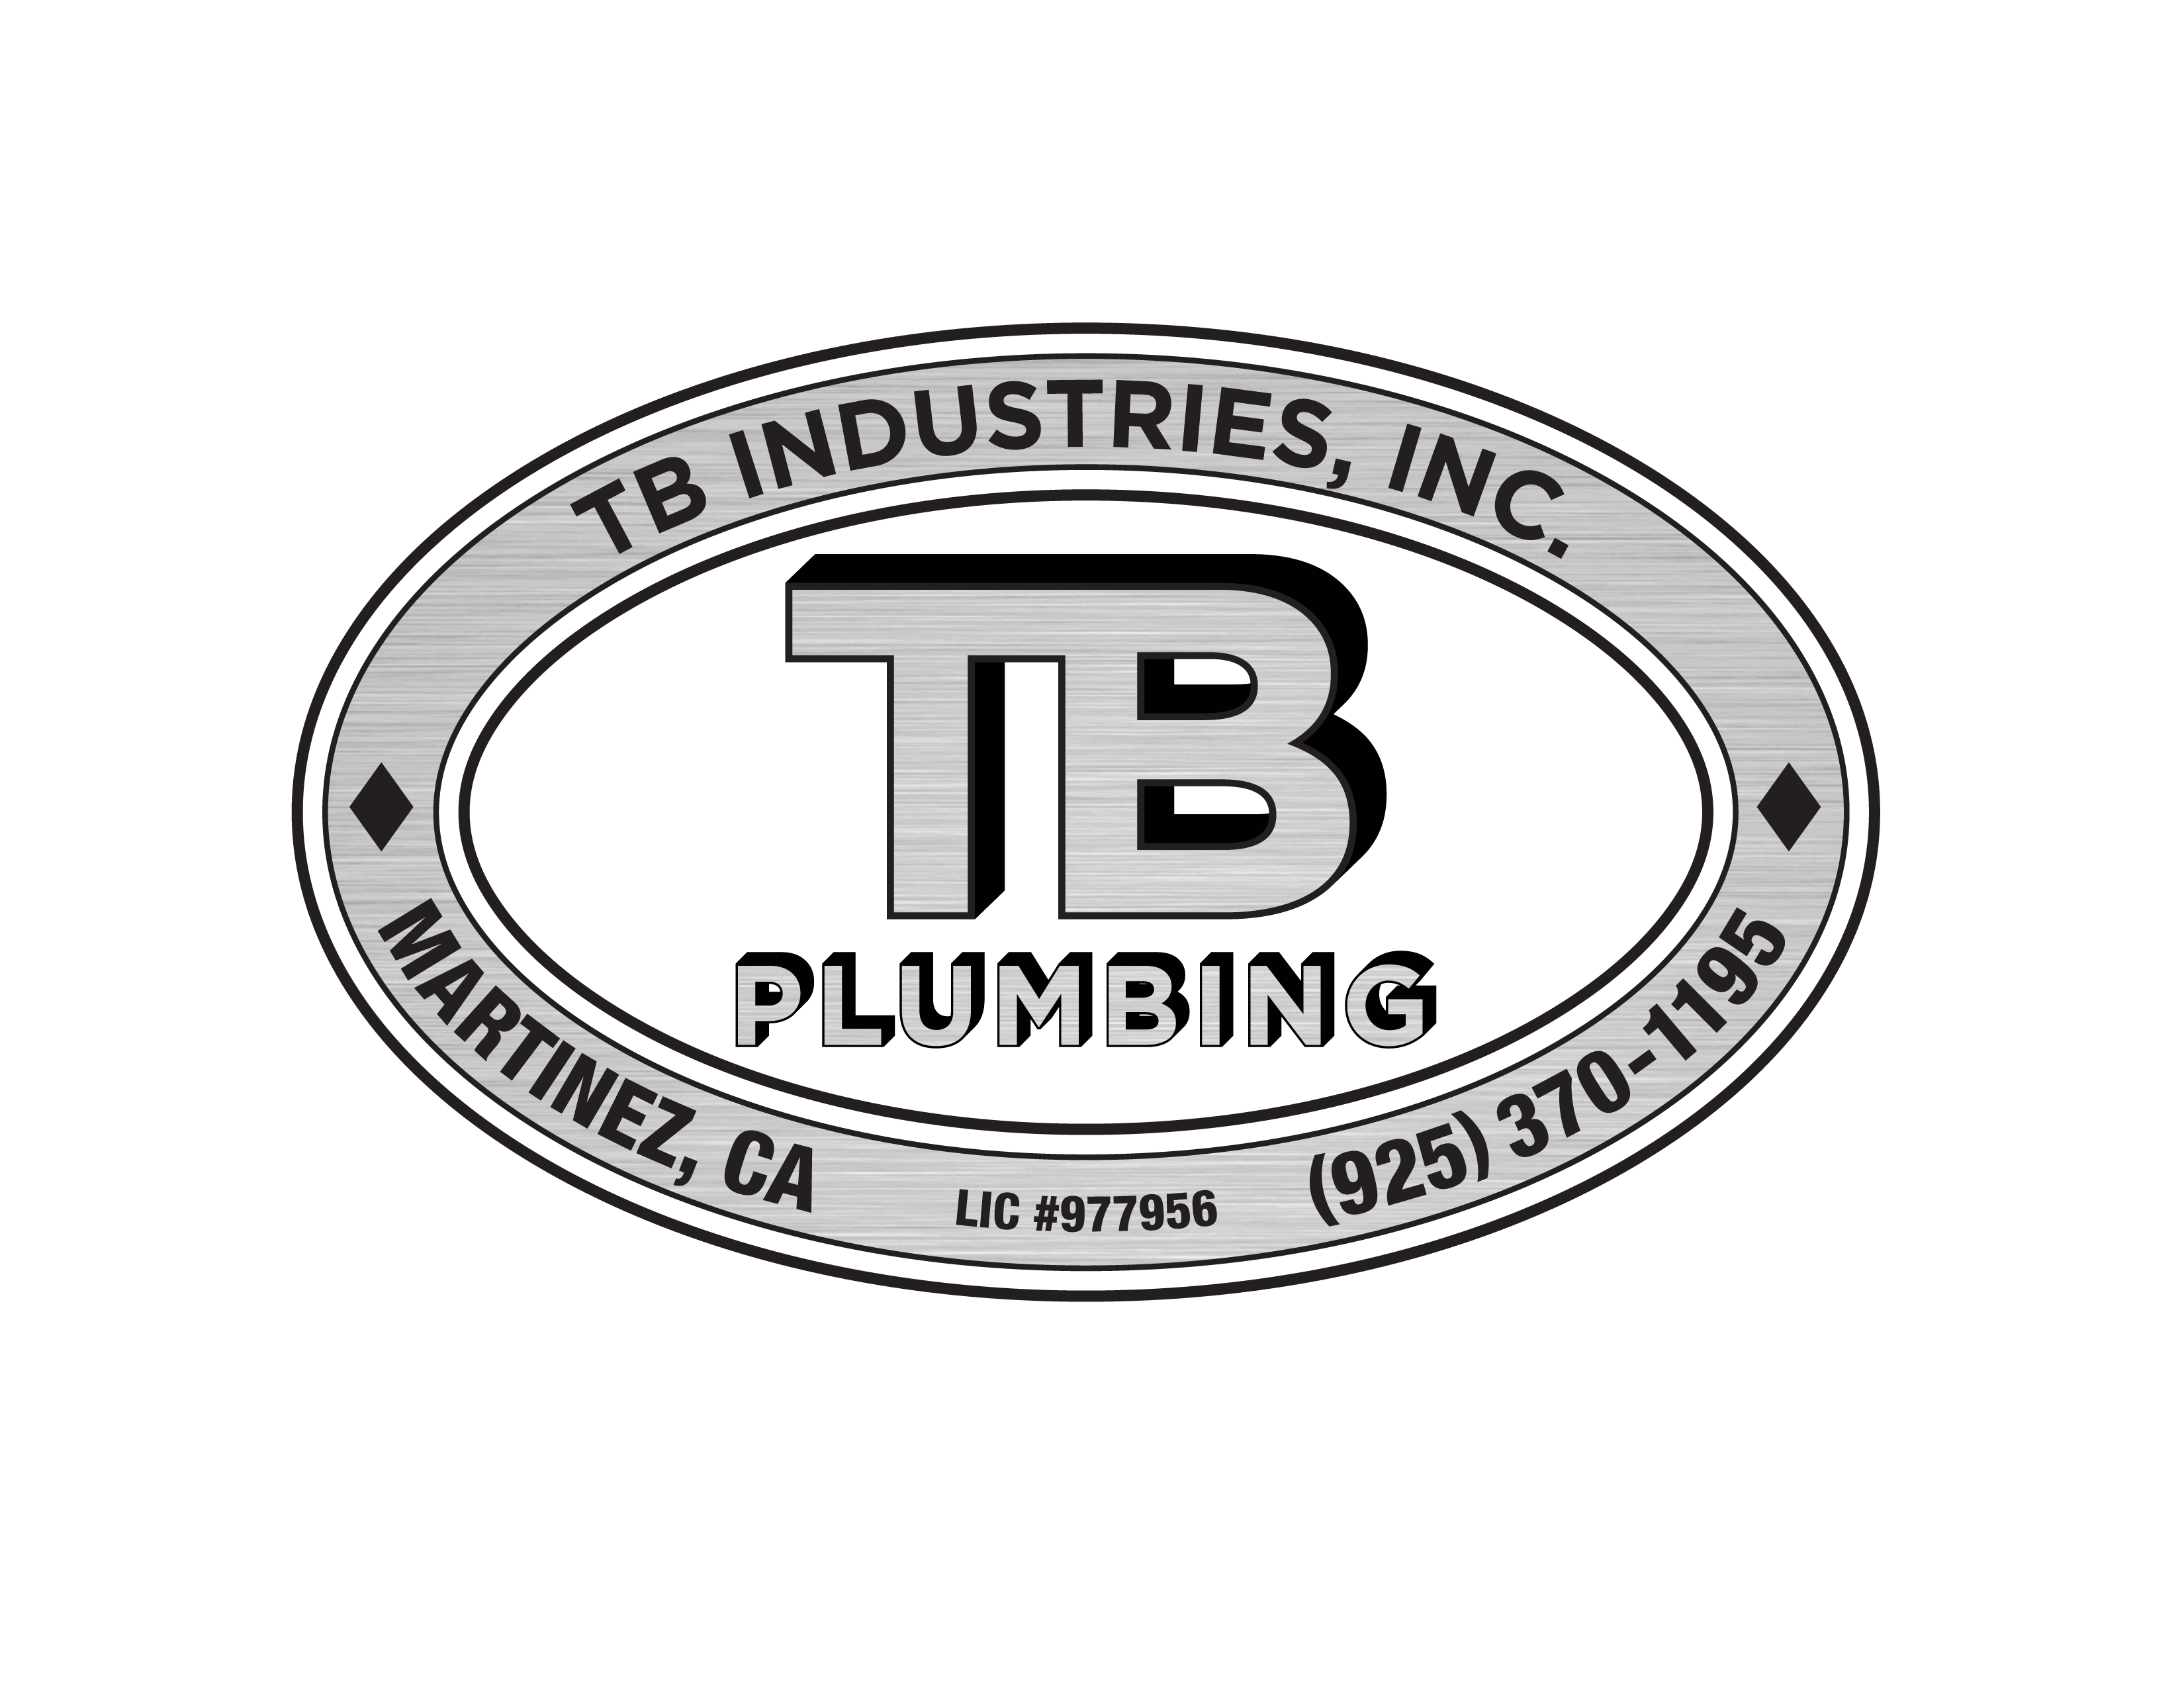 TB Plumbing_logo